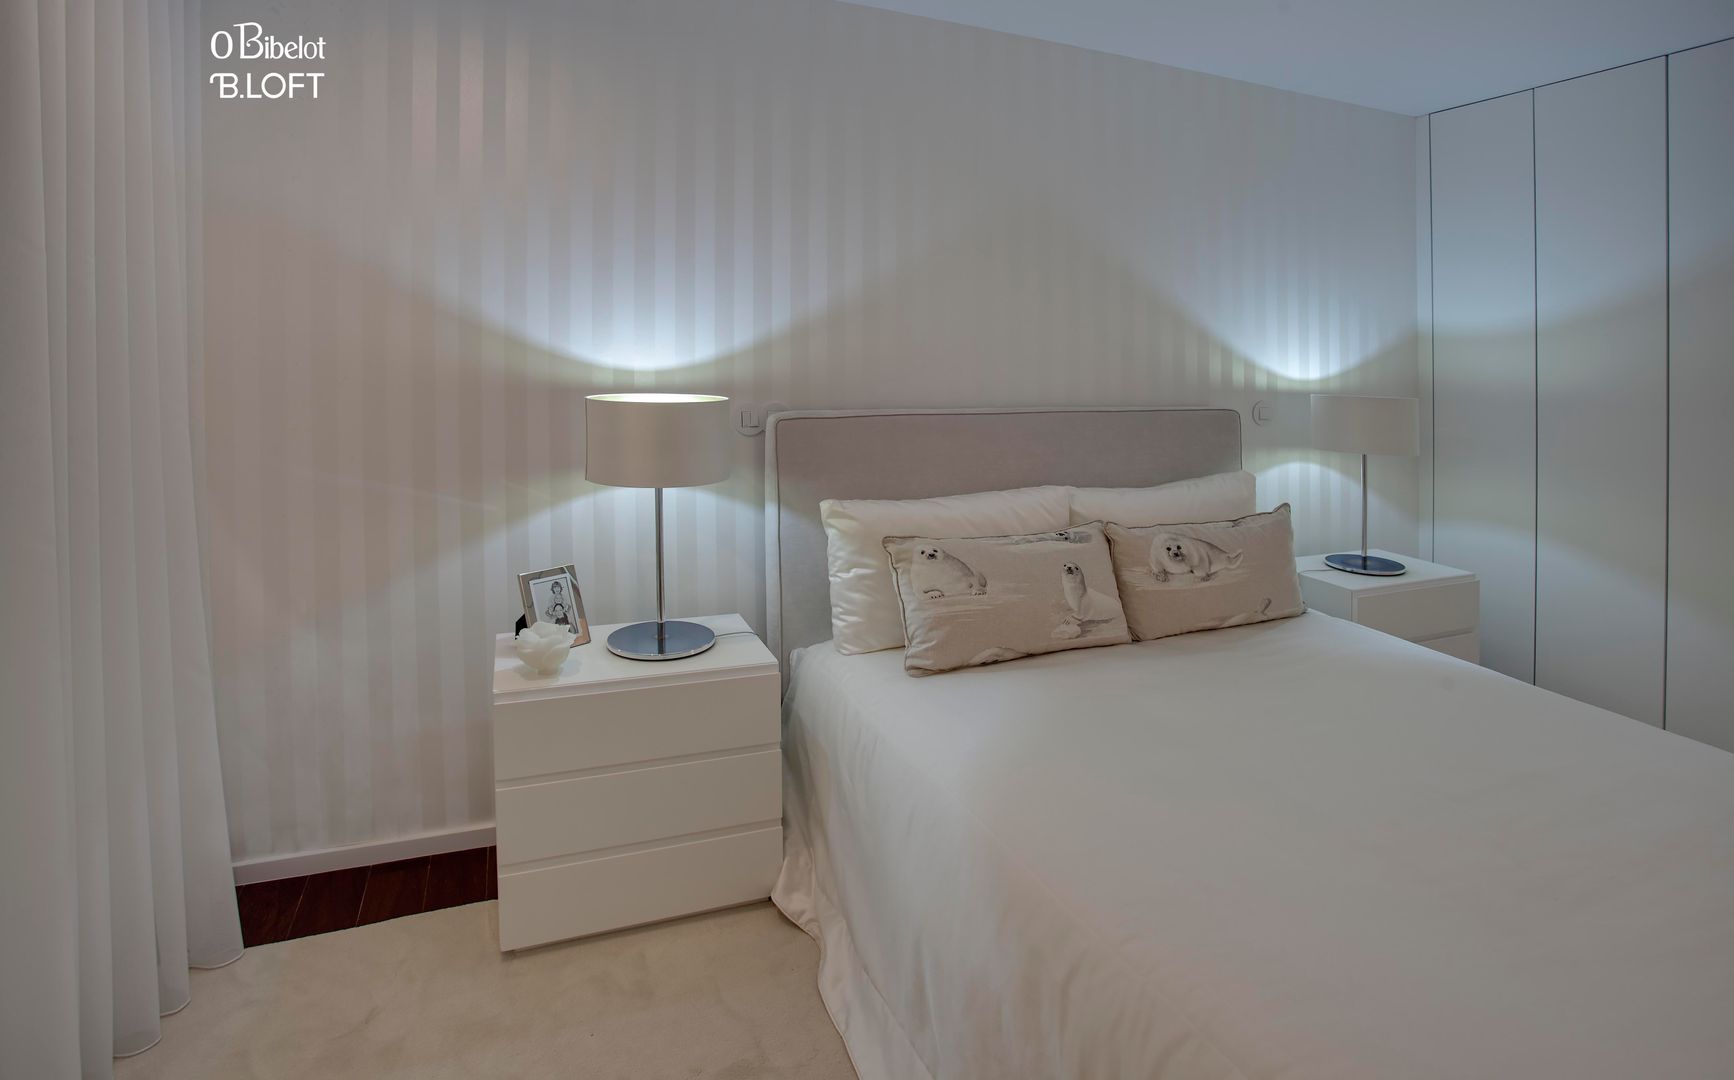 2015, Decoração de Apartamento BI, B.loft B.loft Minimalistische slaapkamers